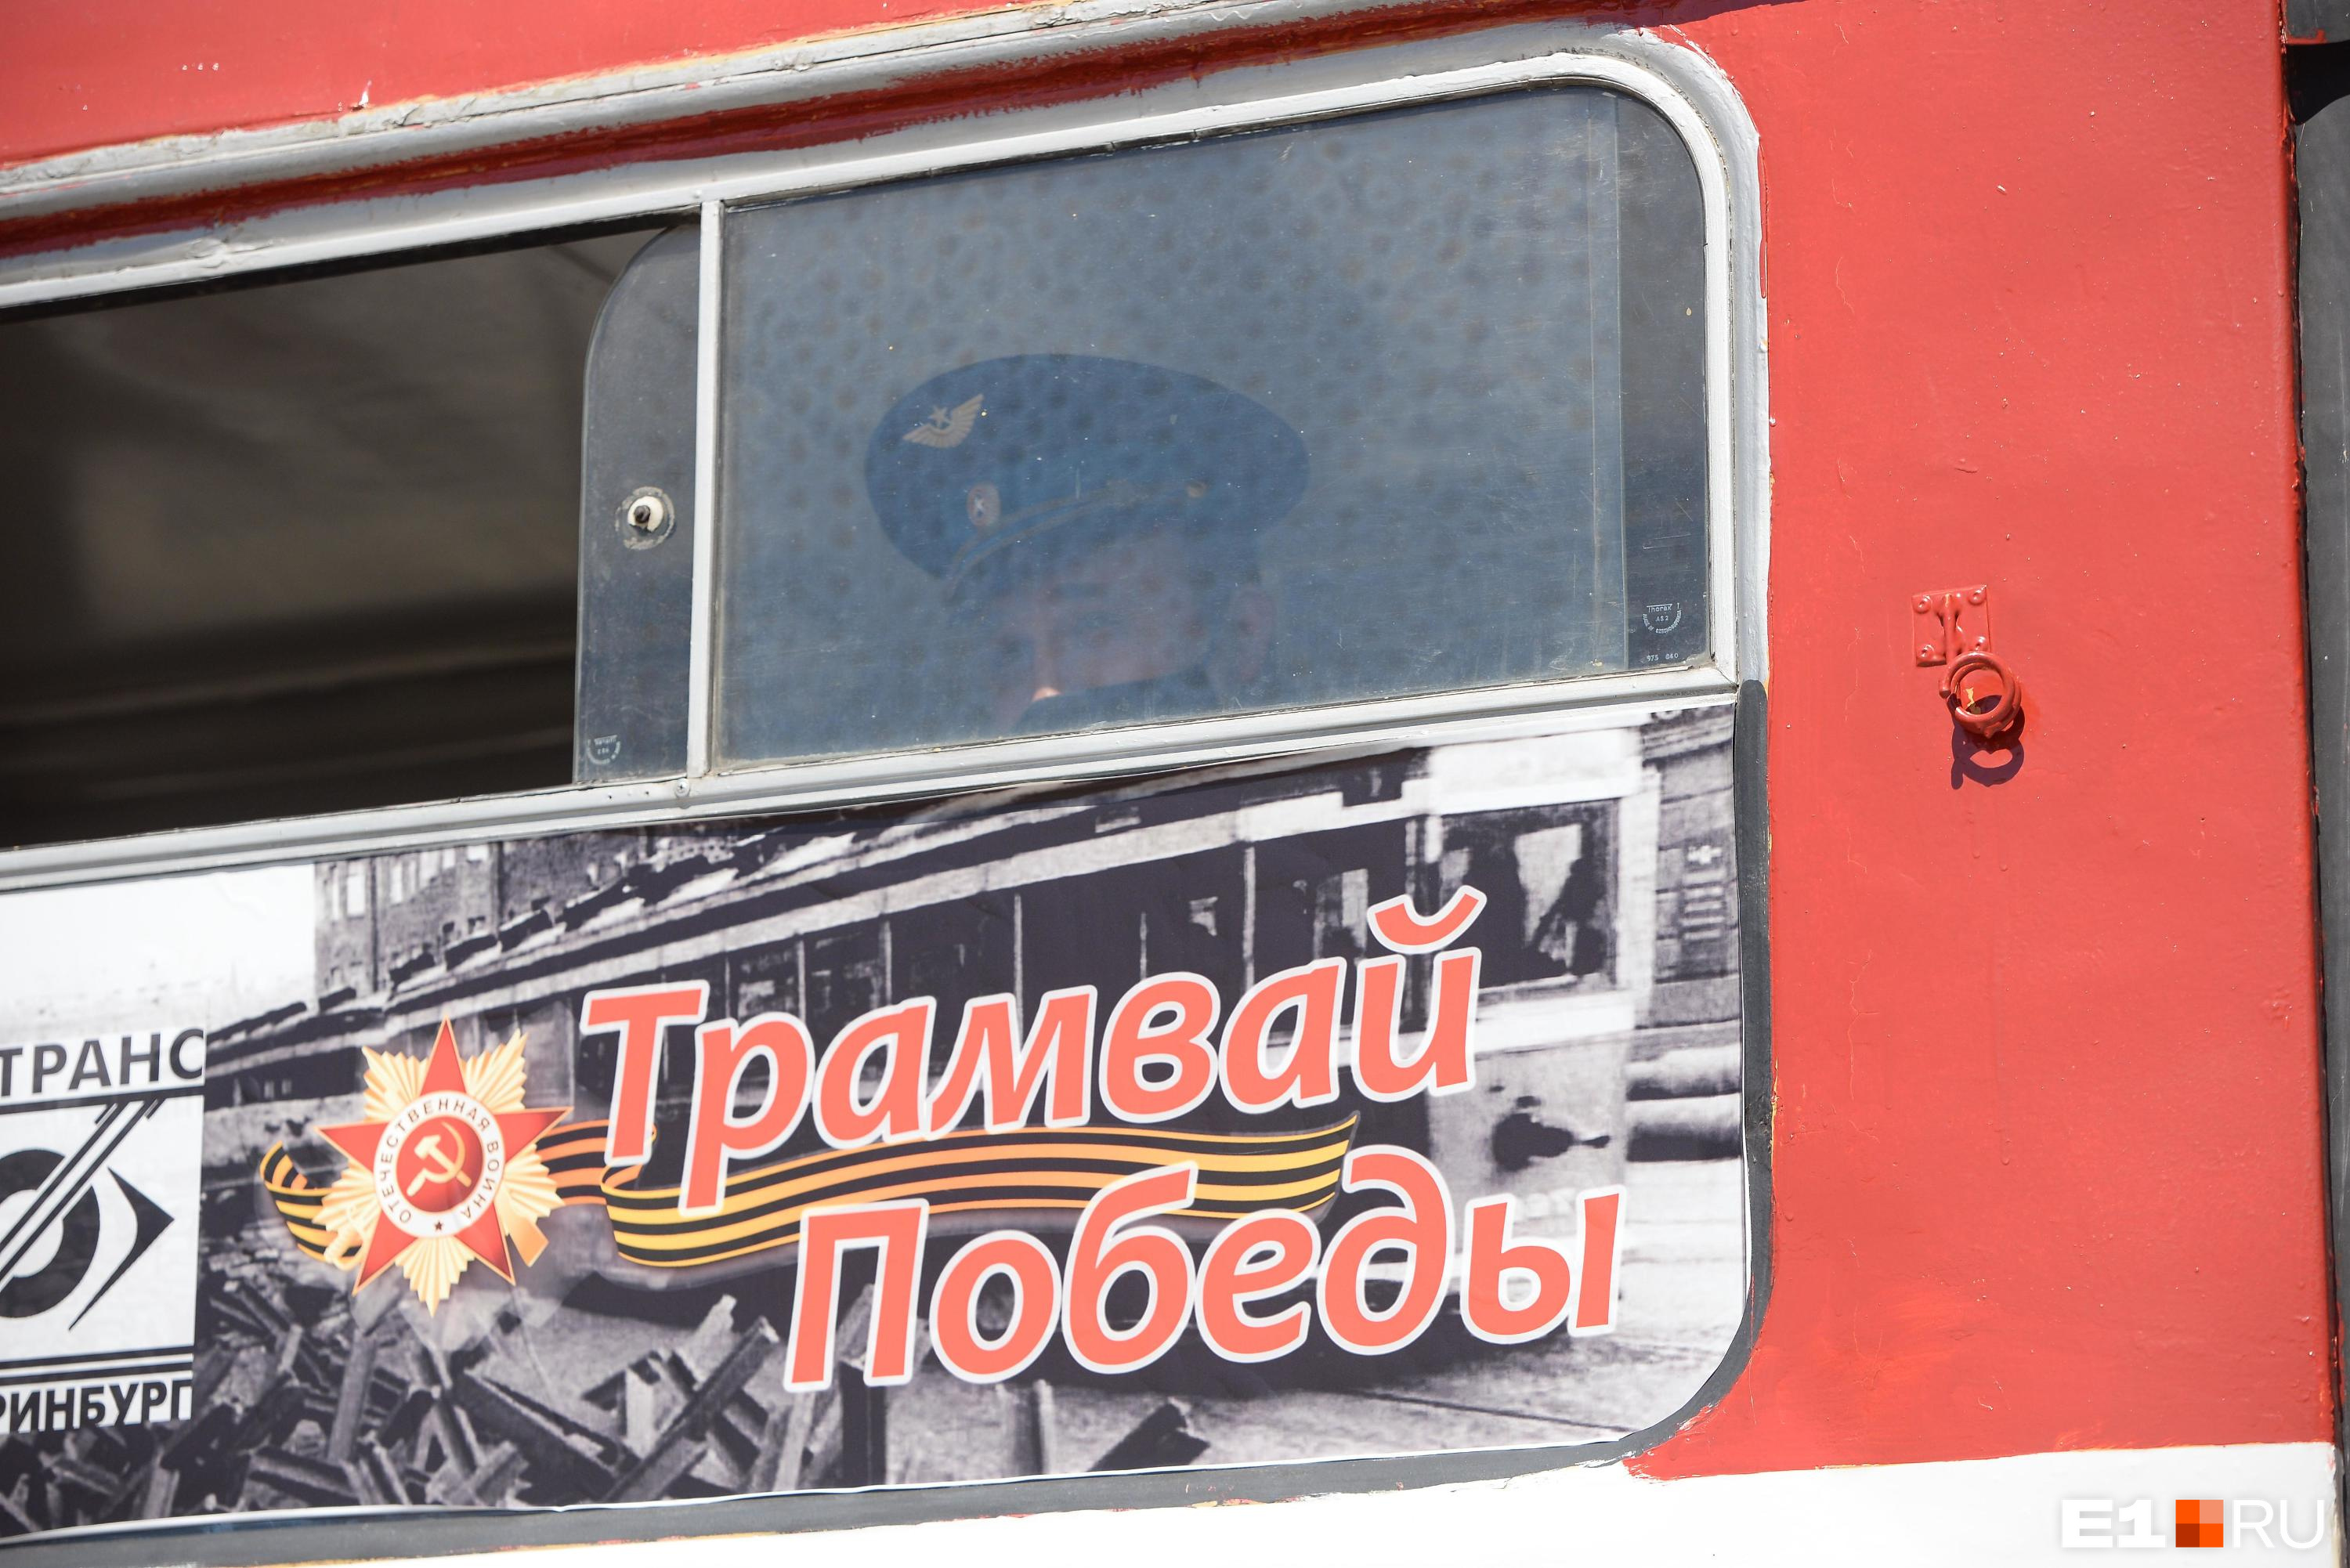 В Екатеринбурге в честь праздника отменят 6 трамвайных маршрутов. Рассказываем, как пойдет транспорт 9 мая